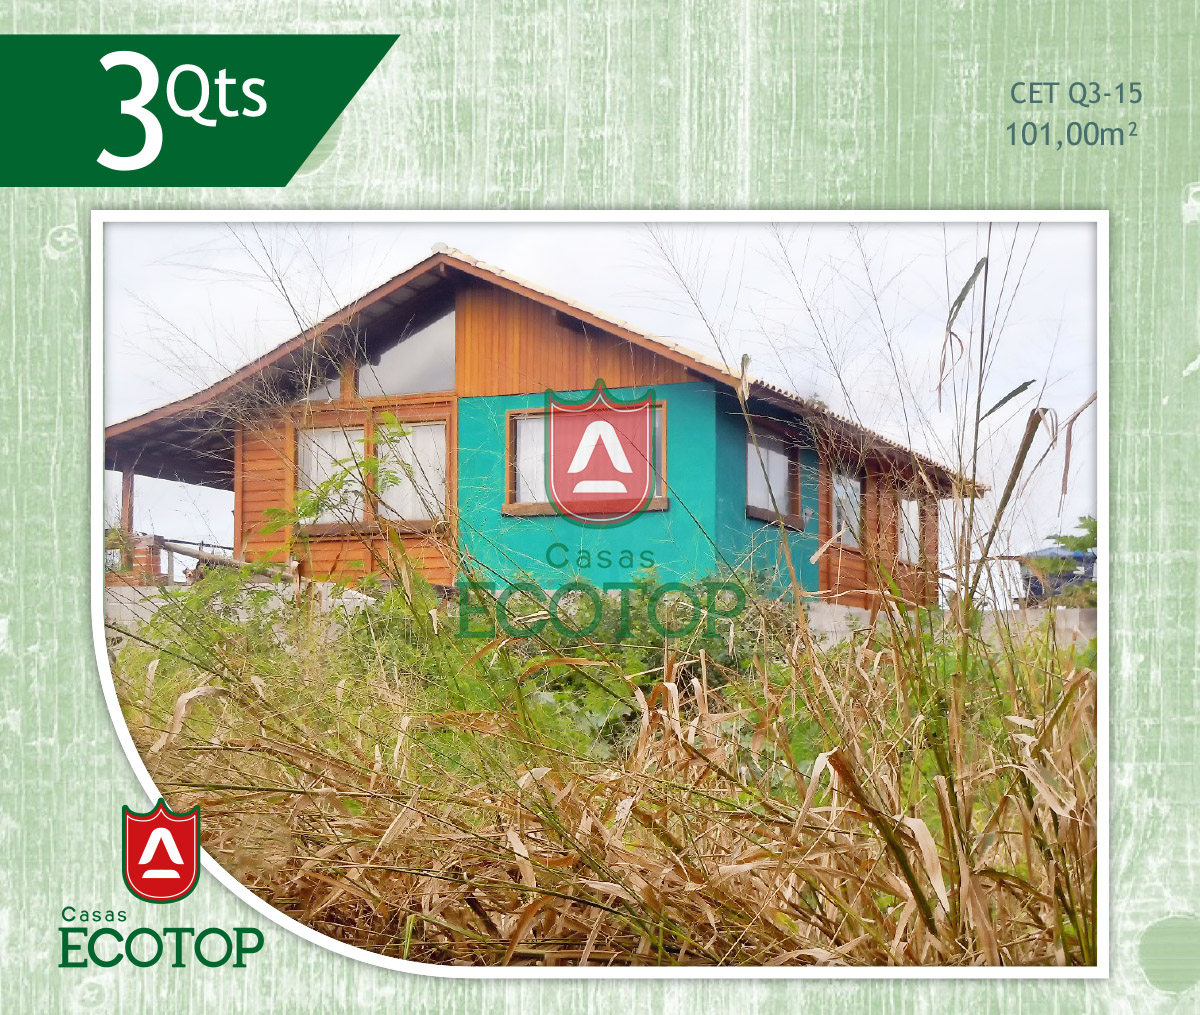 cet-15-fachada-casas-de-madeira-ecotop.cdr